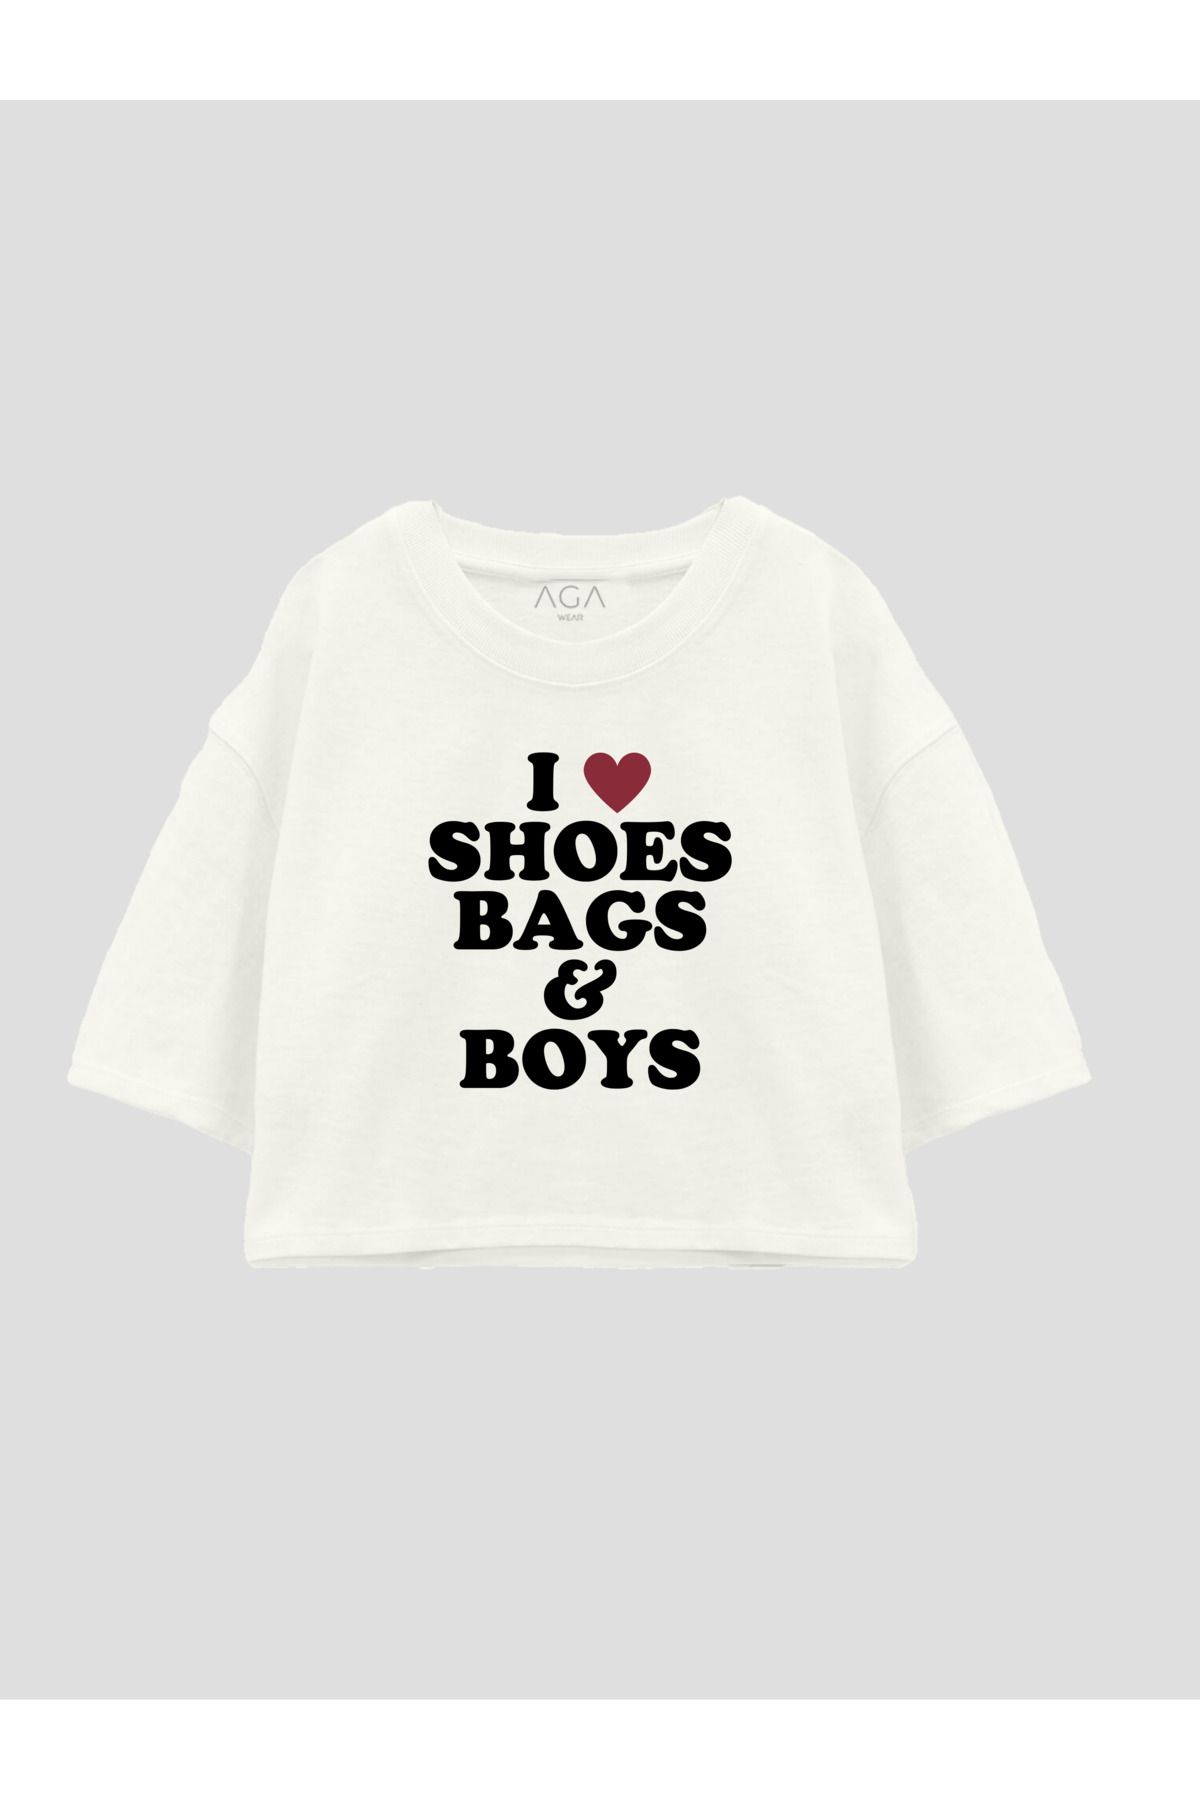 AGA WEAR I Love Shoes Bags & Boys Crop